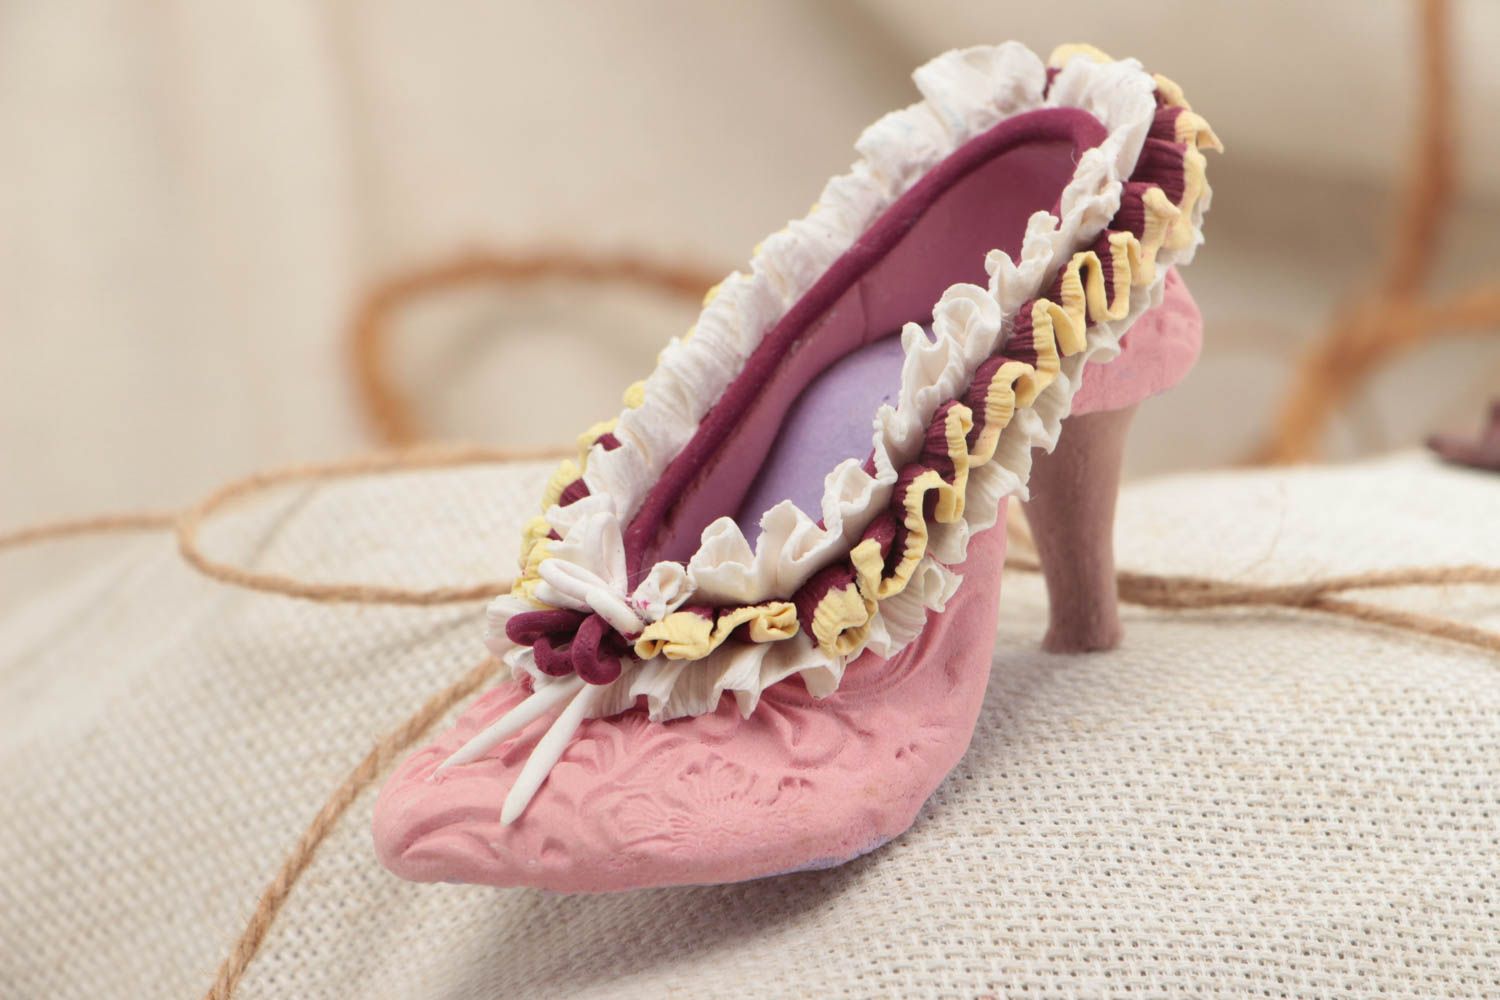 Красивая статуэтка из полимерной глины в виде розовой туфельки ручной работы фото 1